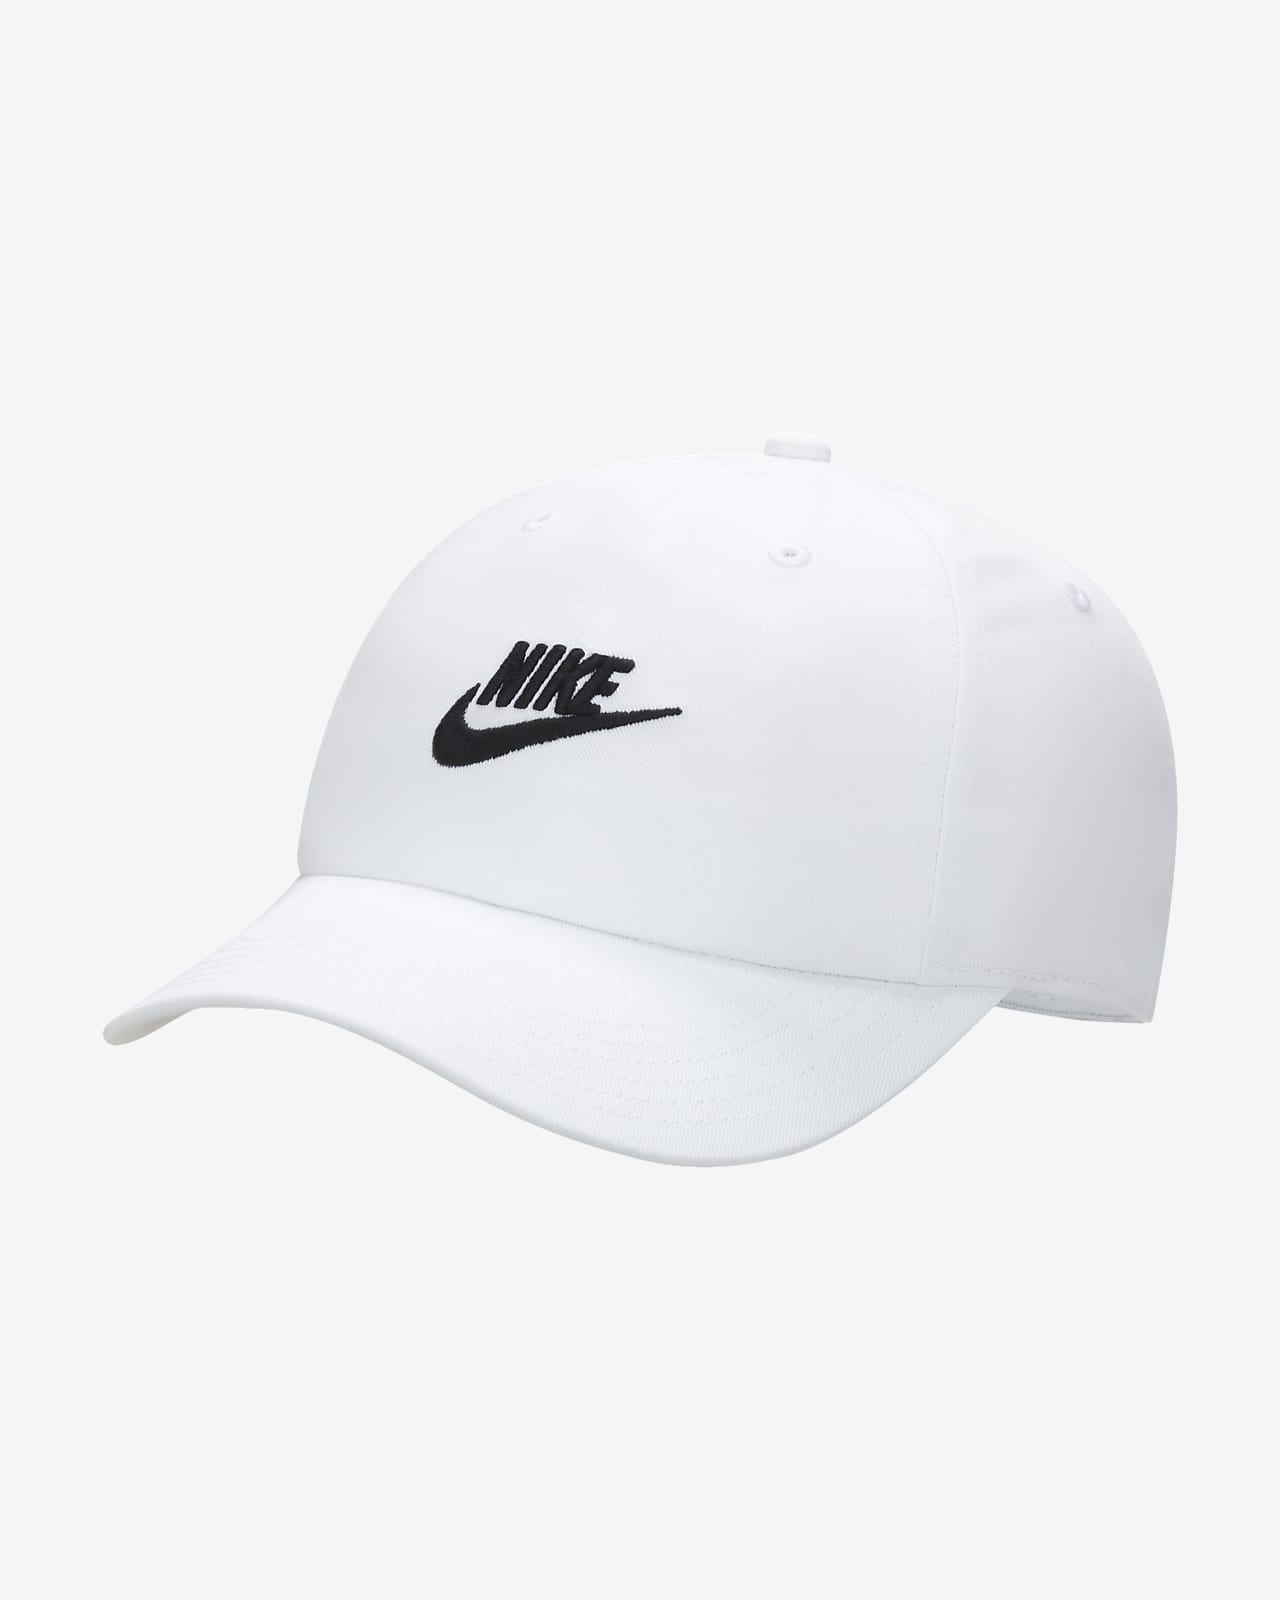 Παιδικό εύκαμπτο καπέλο jockey Futura με ξεθωριασμένη όψη Nike Club